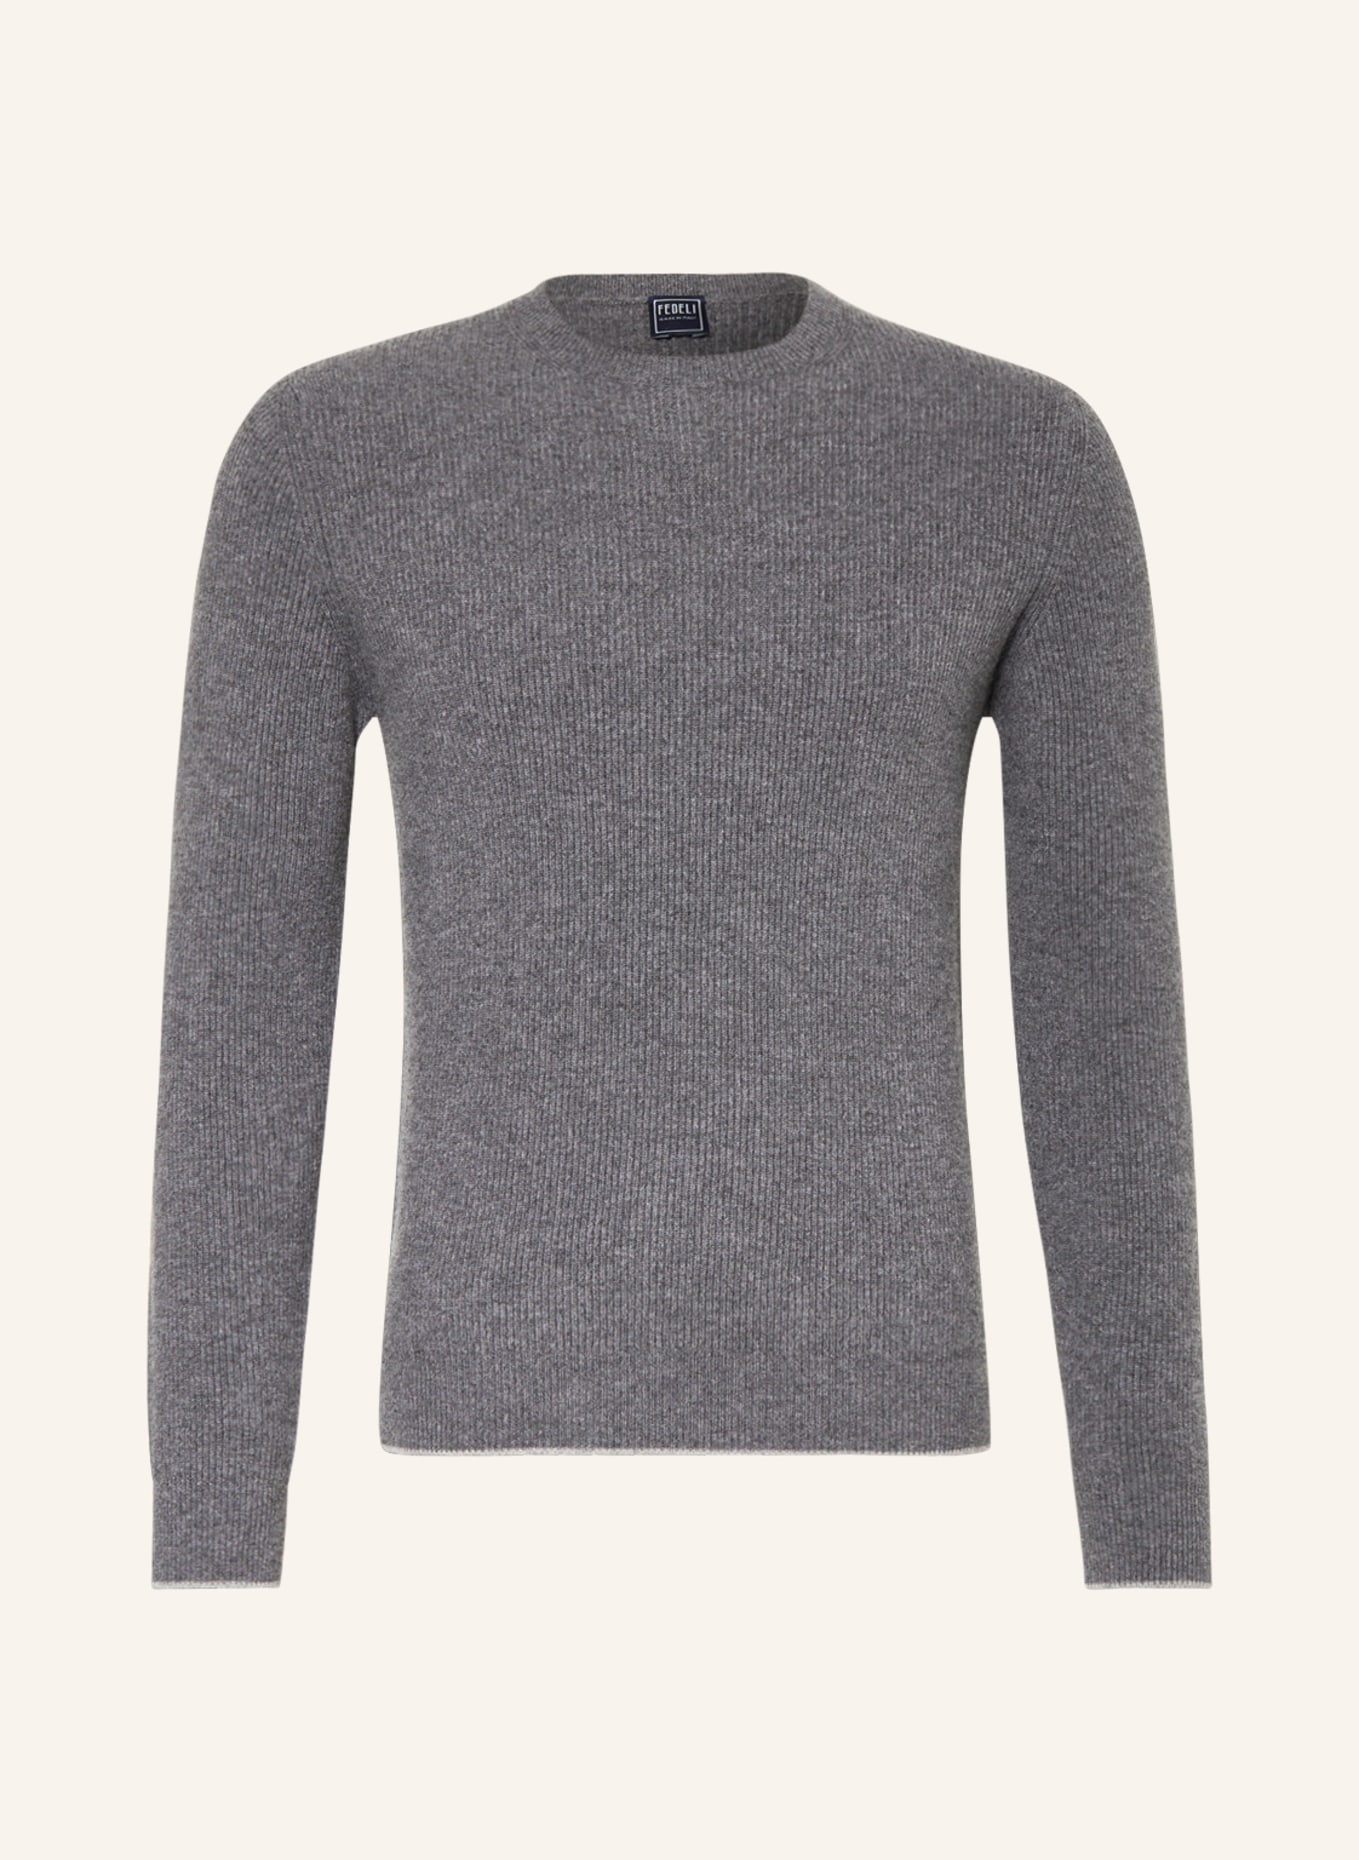 FEDELI Cashmere-Pullover, Farbe: GRAU (Bild 1)